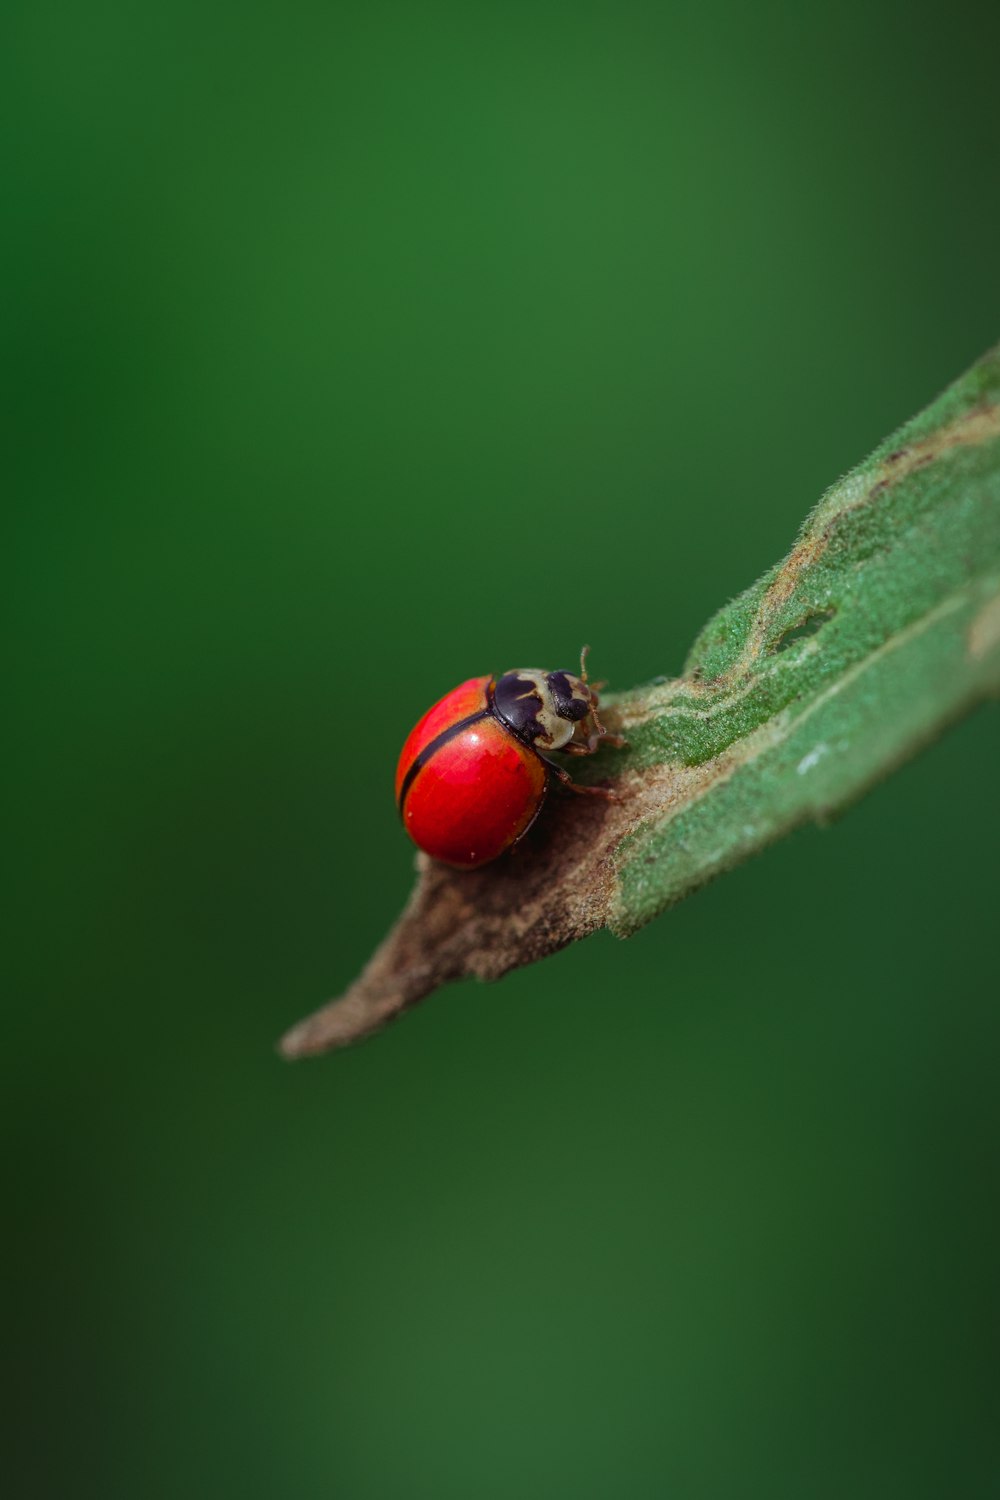 a red ladybug sitting on a green leaf